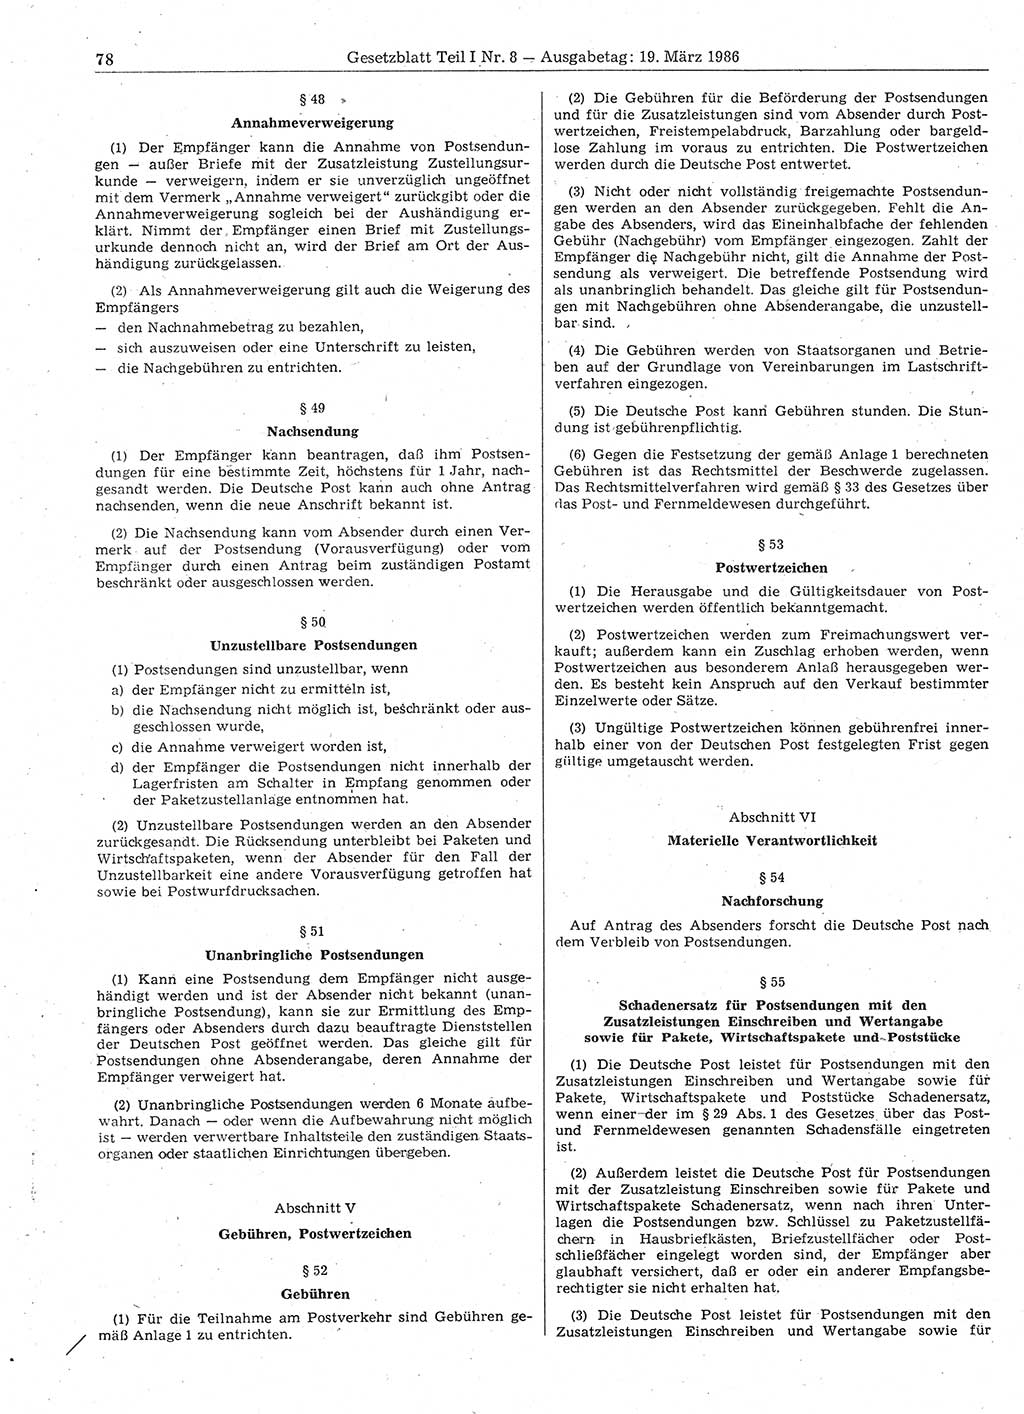 Gesetzblatt (GBl.) der Deutschen Demokratischen Republik (DDR) Teil Ⅰ 1986, Seite 78 (GBl. DDR Ⅰ 1986, S. 78)